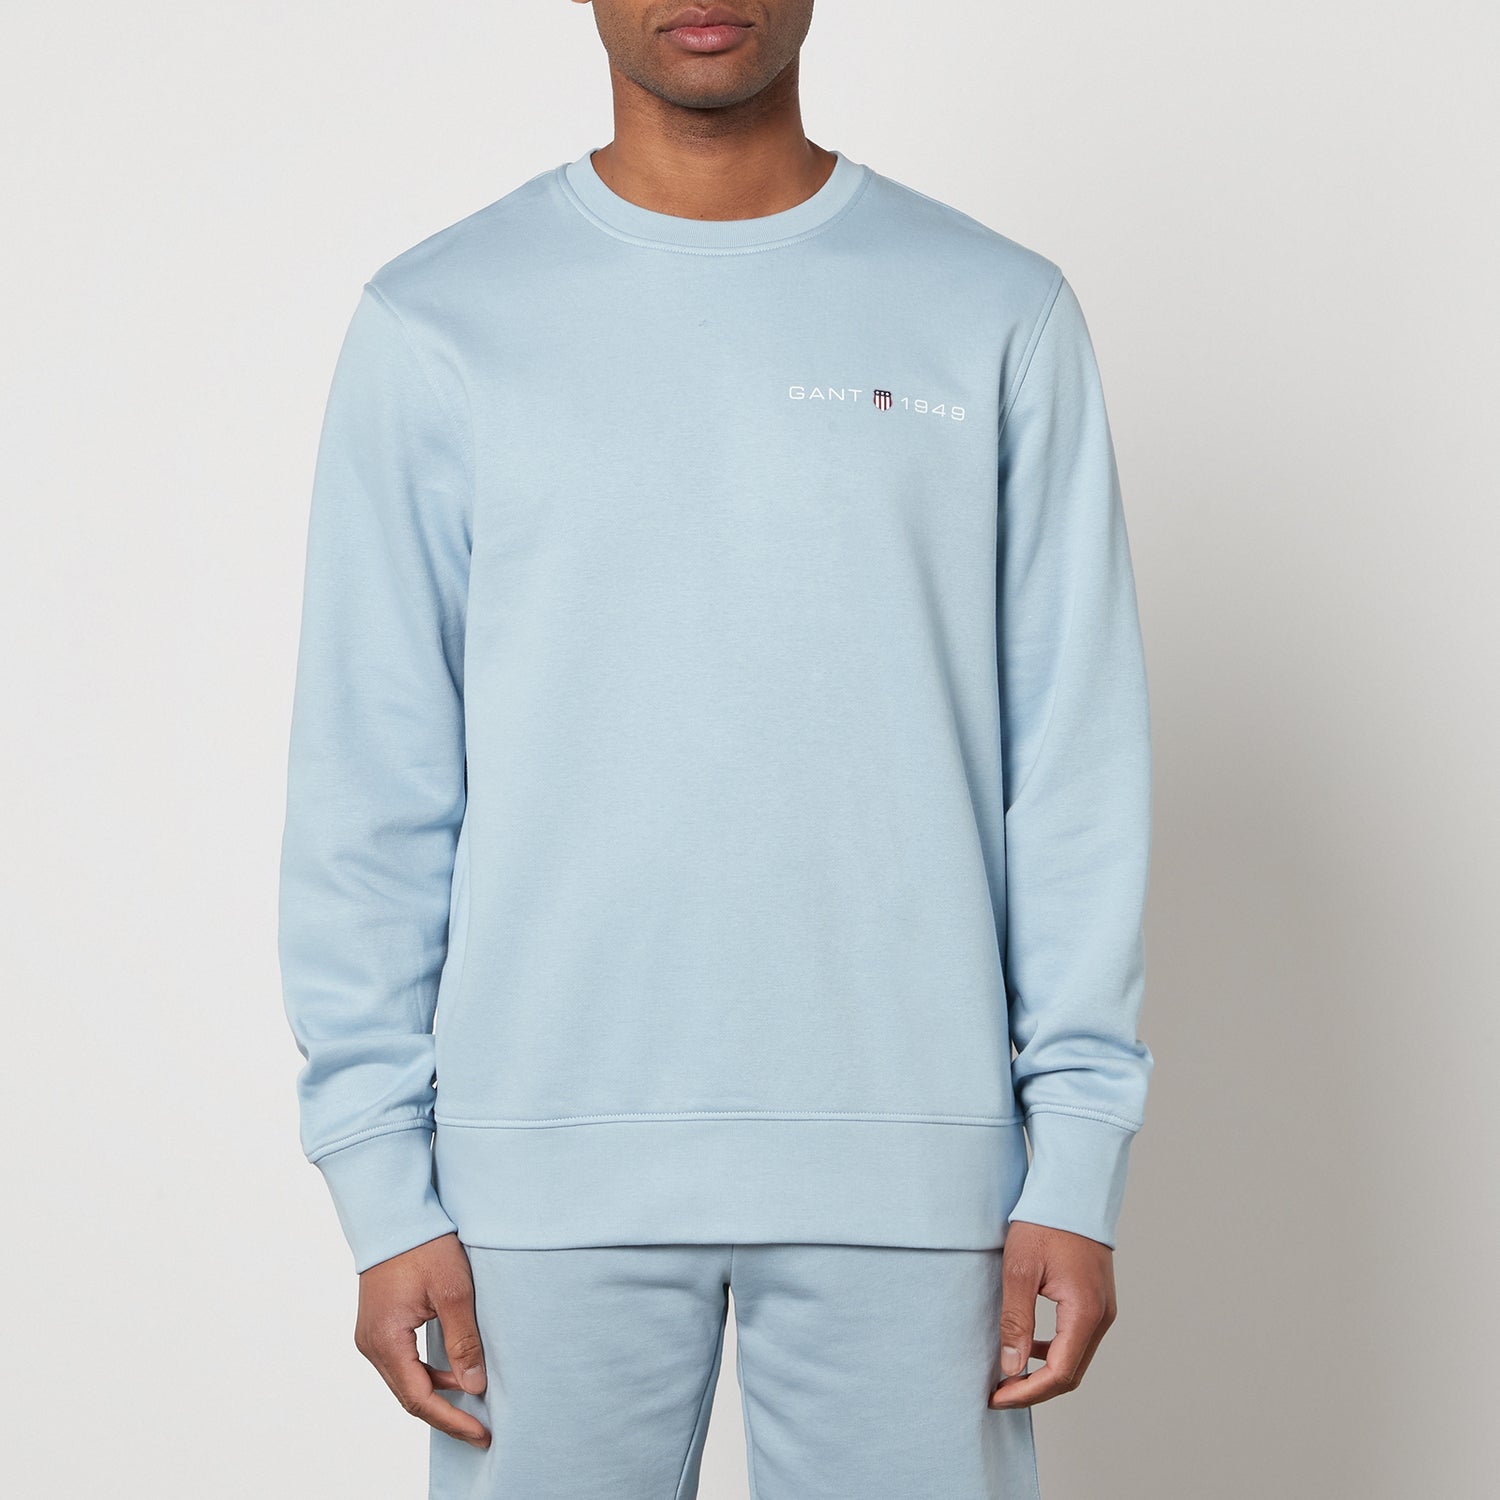 GANT Graphic Cotton-Blend Sweatshirt - S